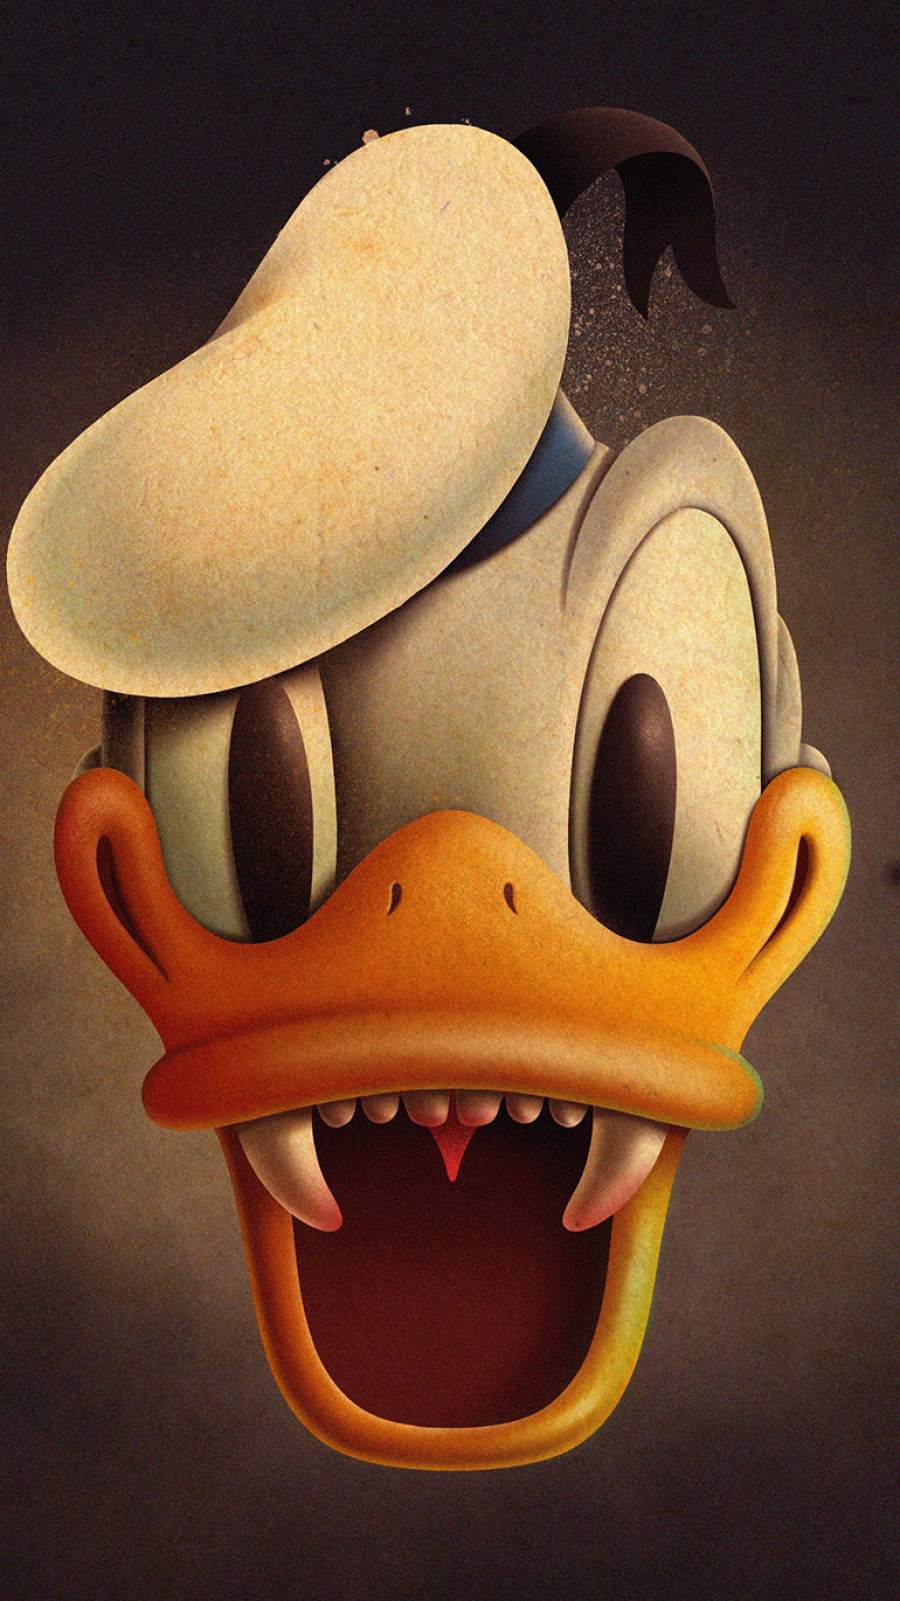 Donald Duck Halloween IPhone Wallpaper - IPhone Wallpapers : iPhone  Wallpapers